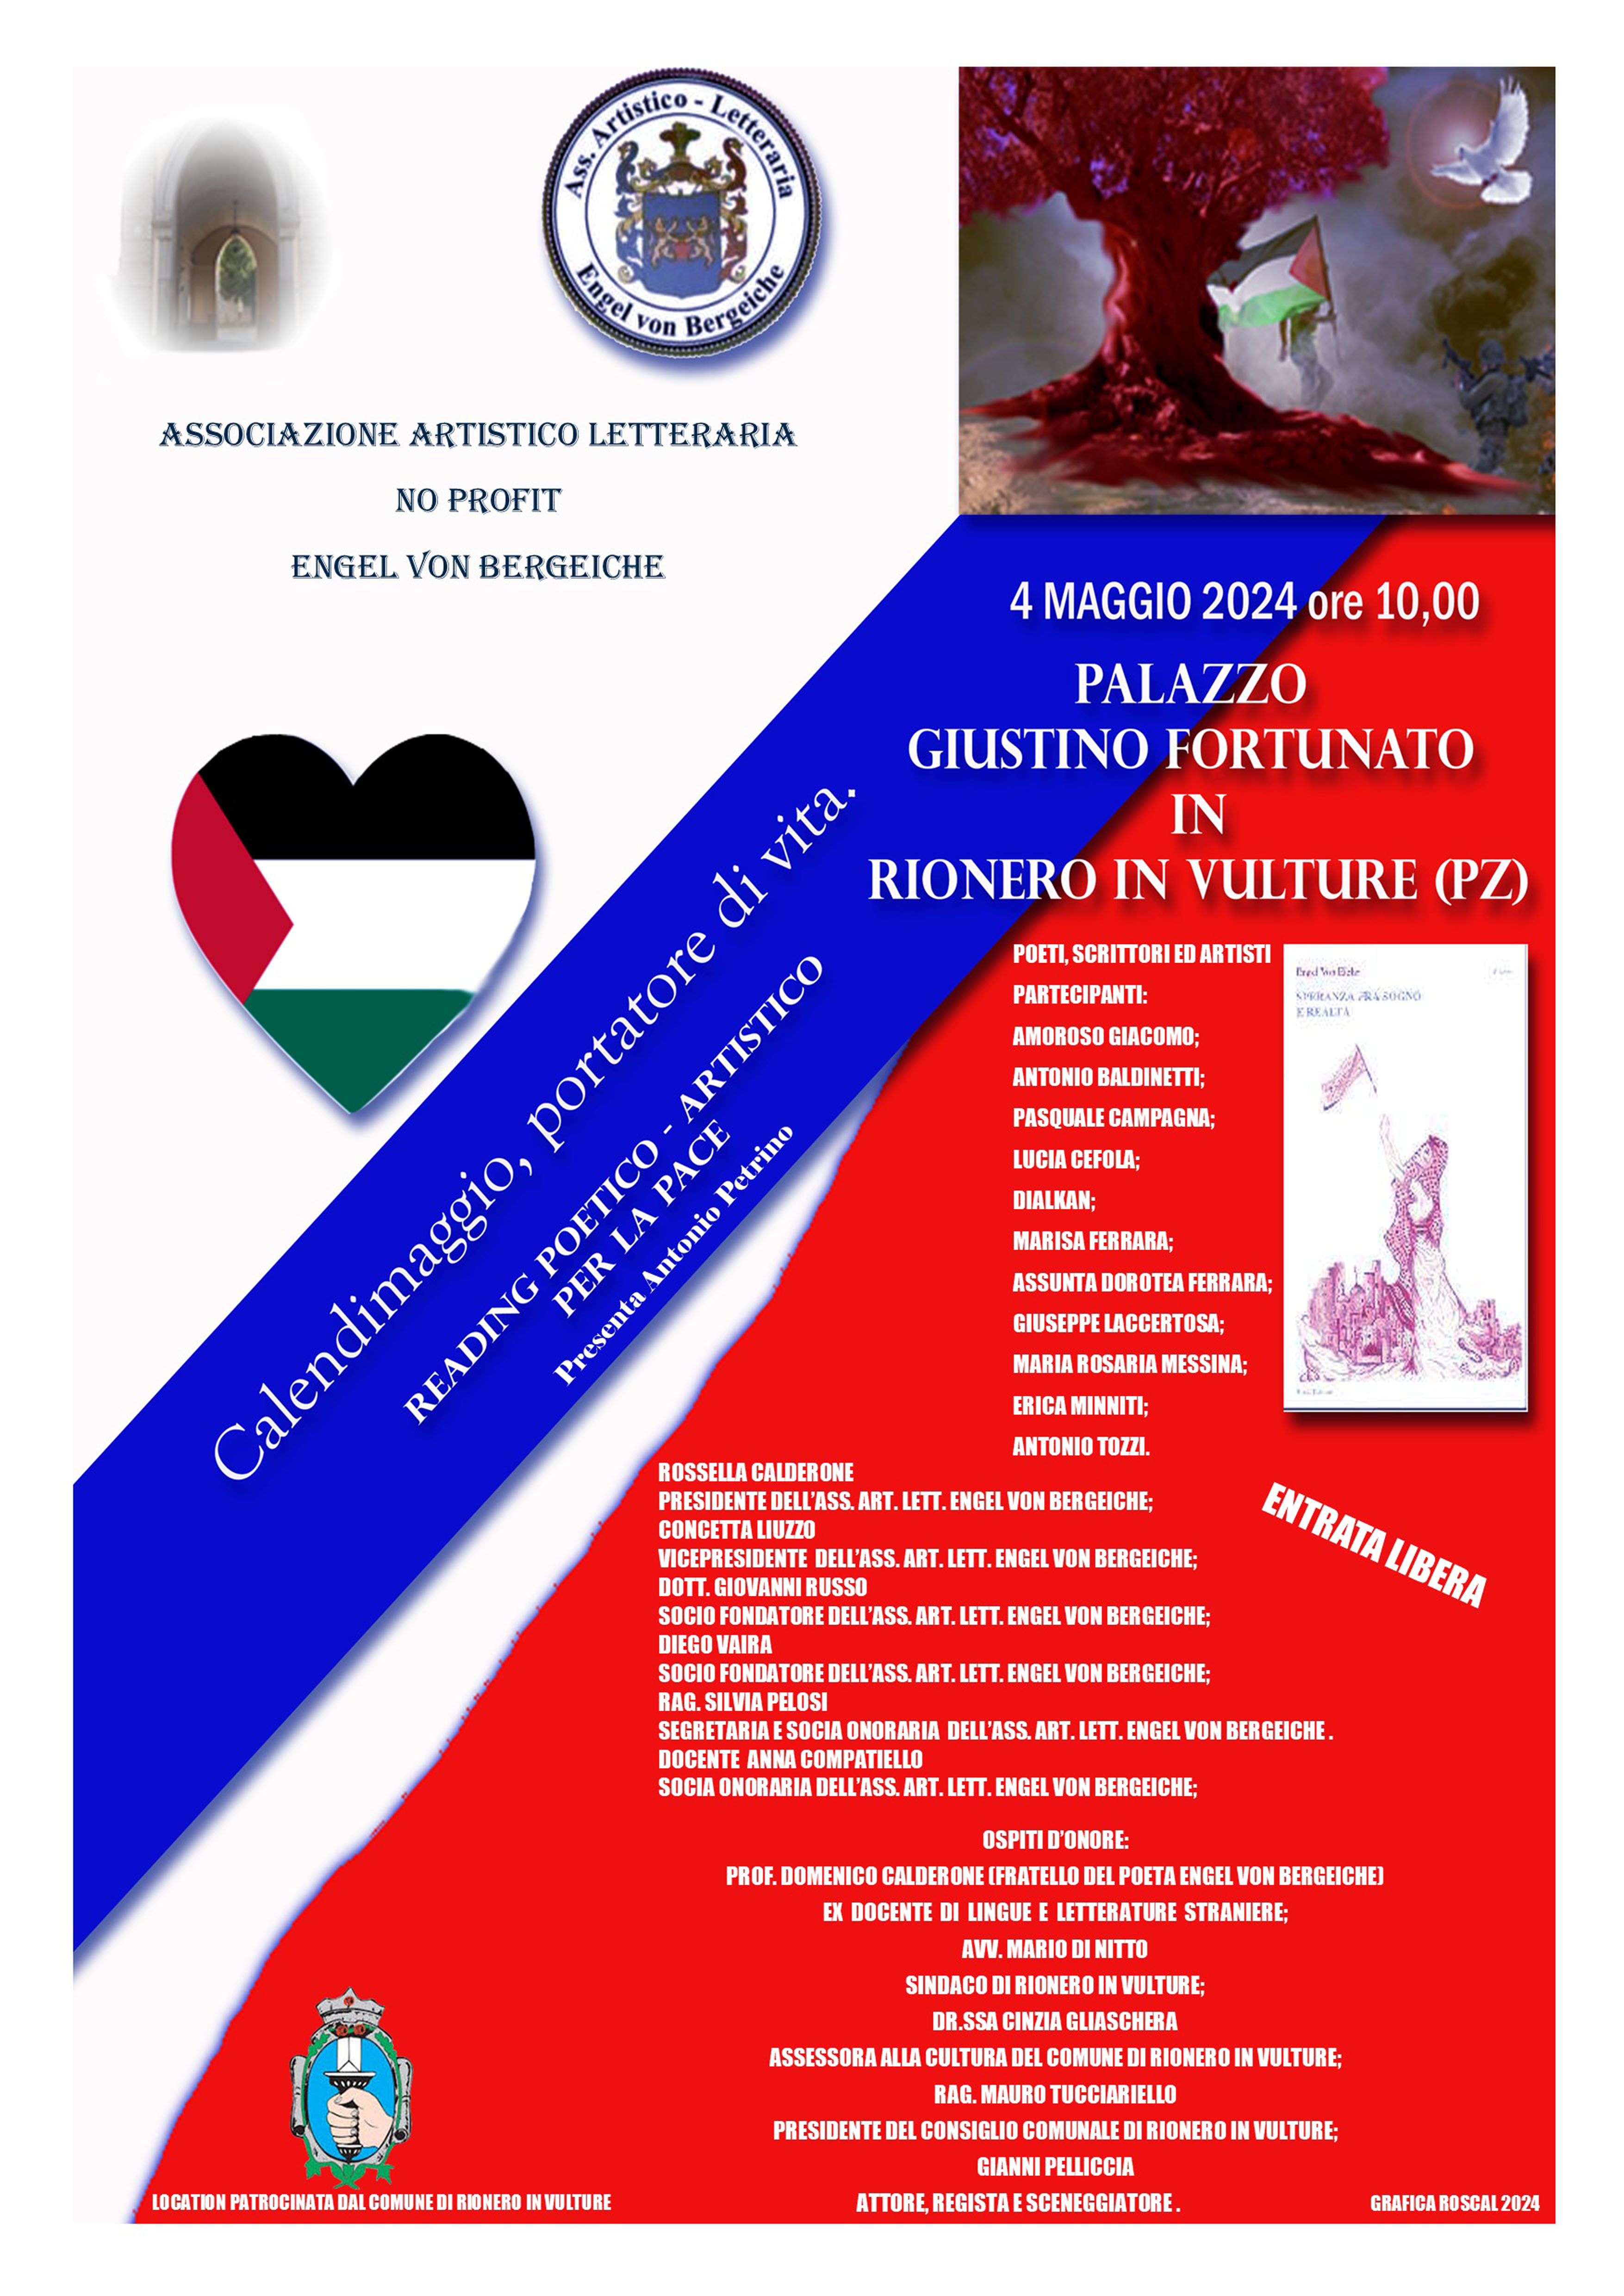 Calendimaggio, portatore di vita - 4 maggio ore 10,00 - Palazzo Giustino Fortunato Rionero in Vulture (Pz)